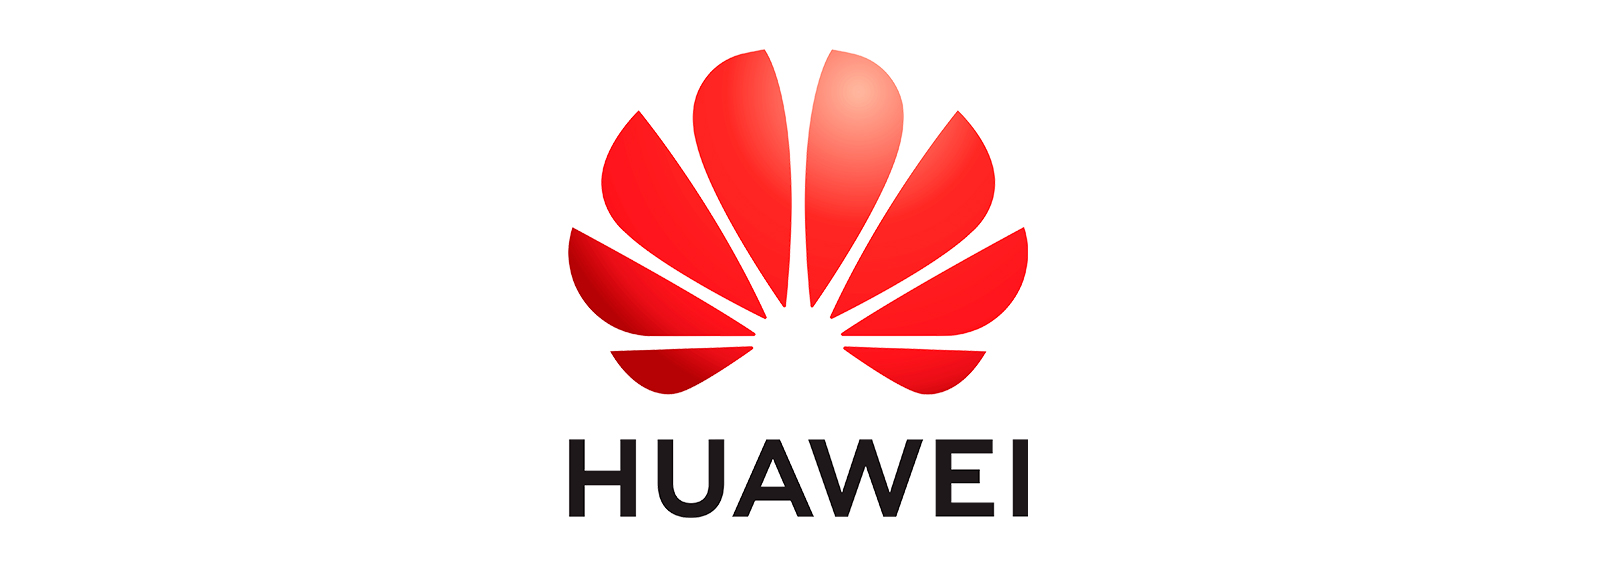 Huawei - Huawei